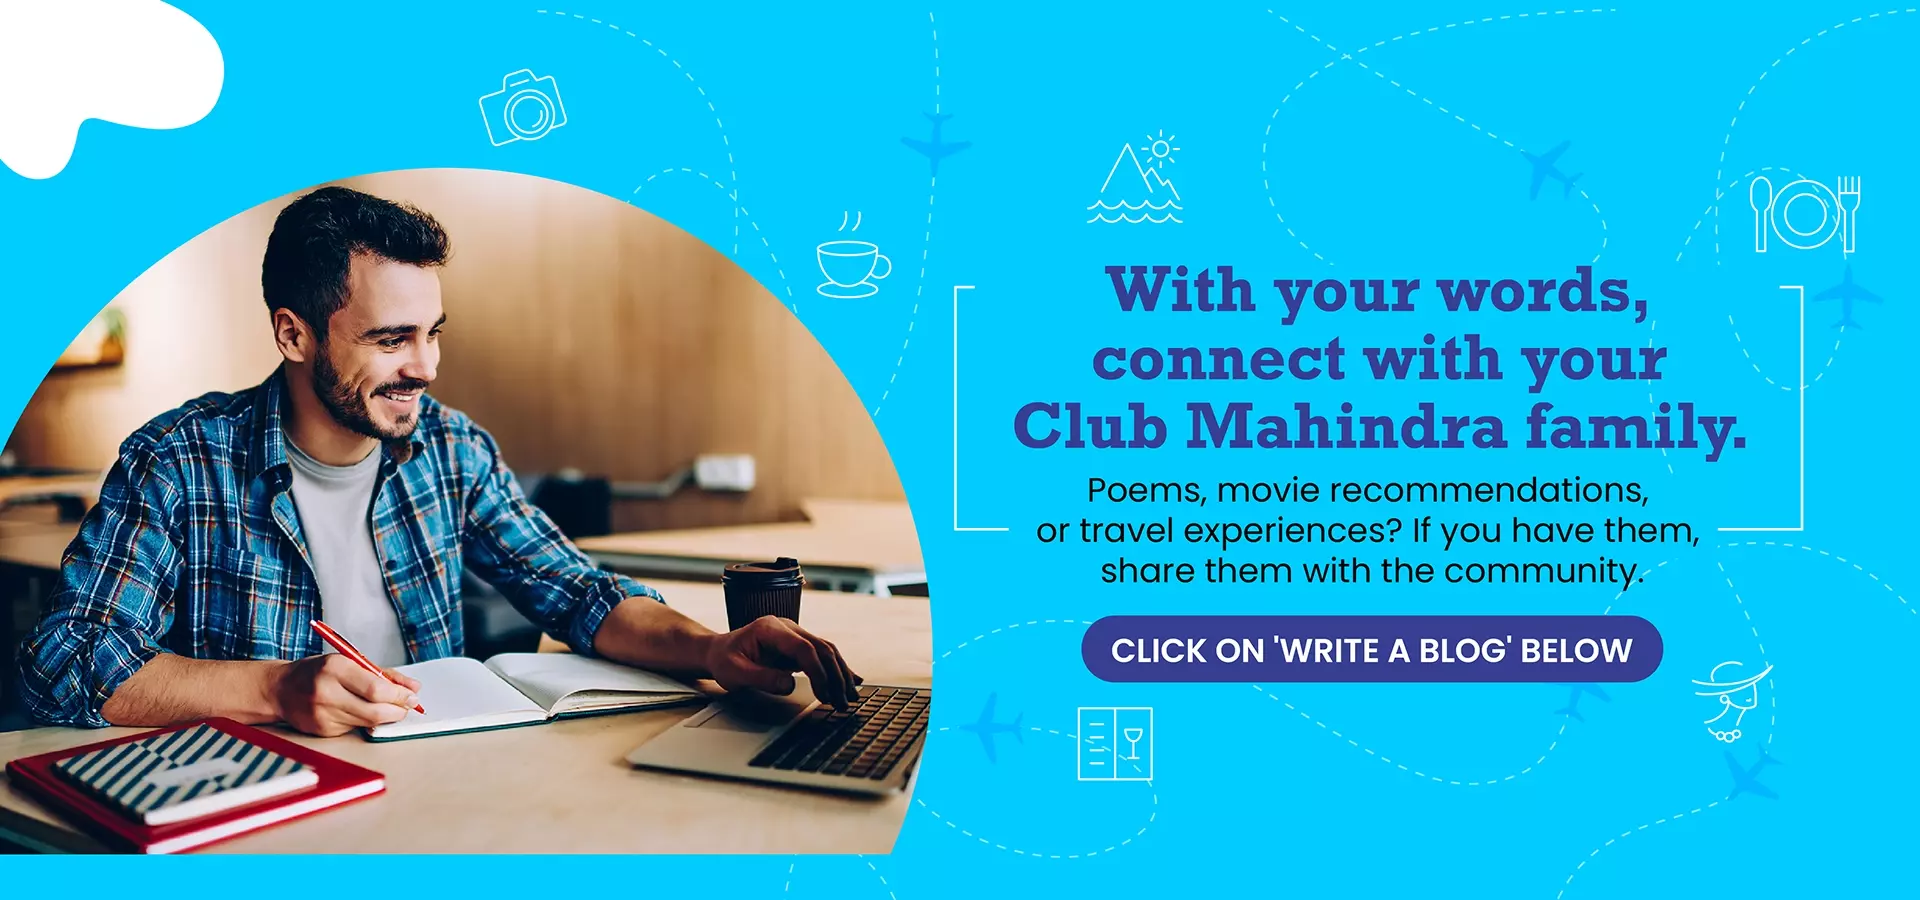 Club Mahindra member blogs